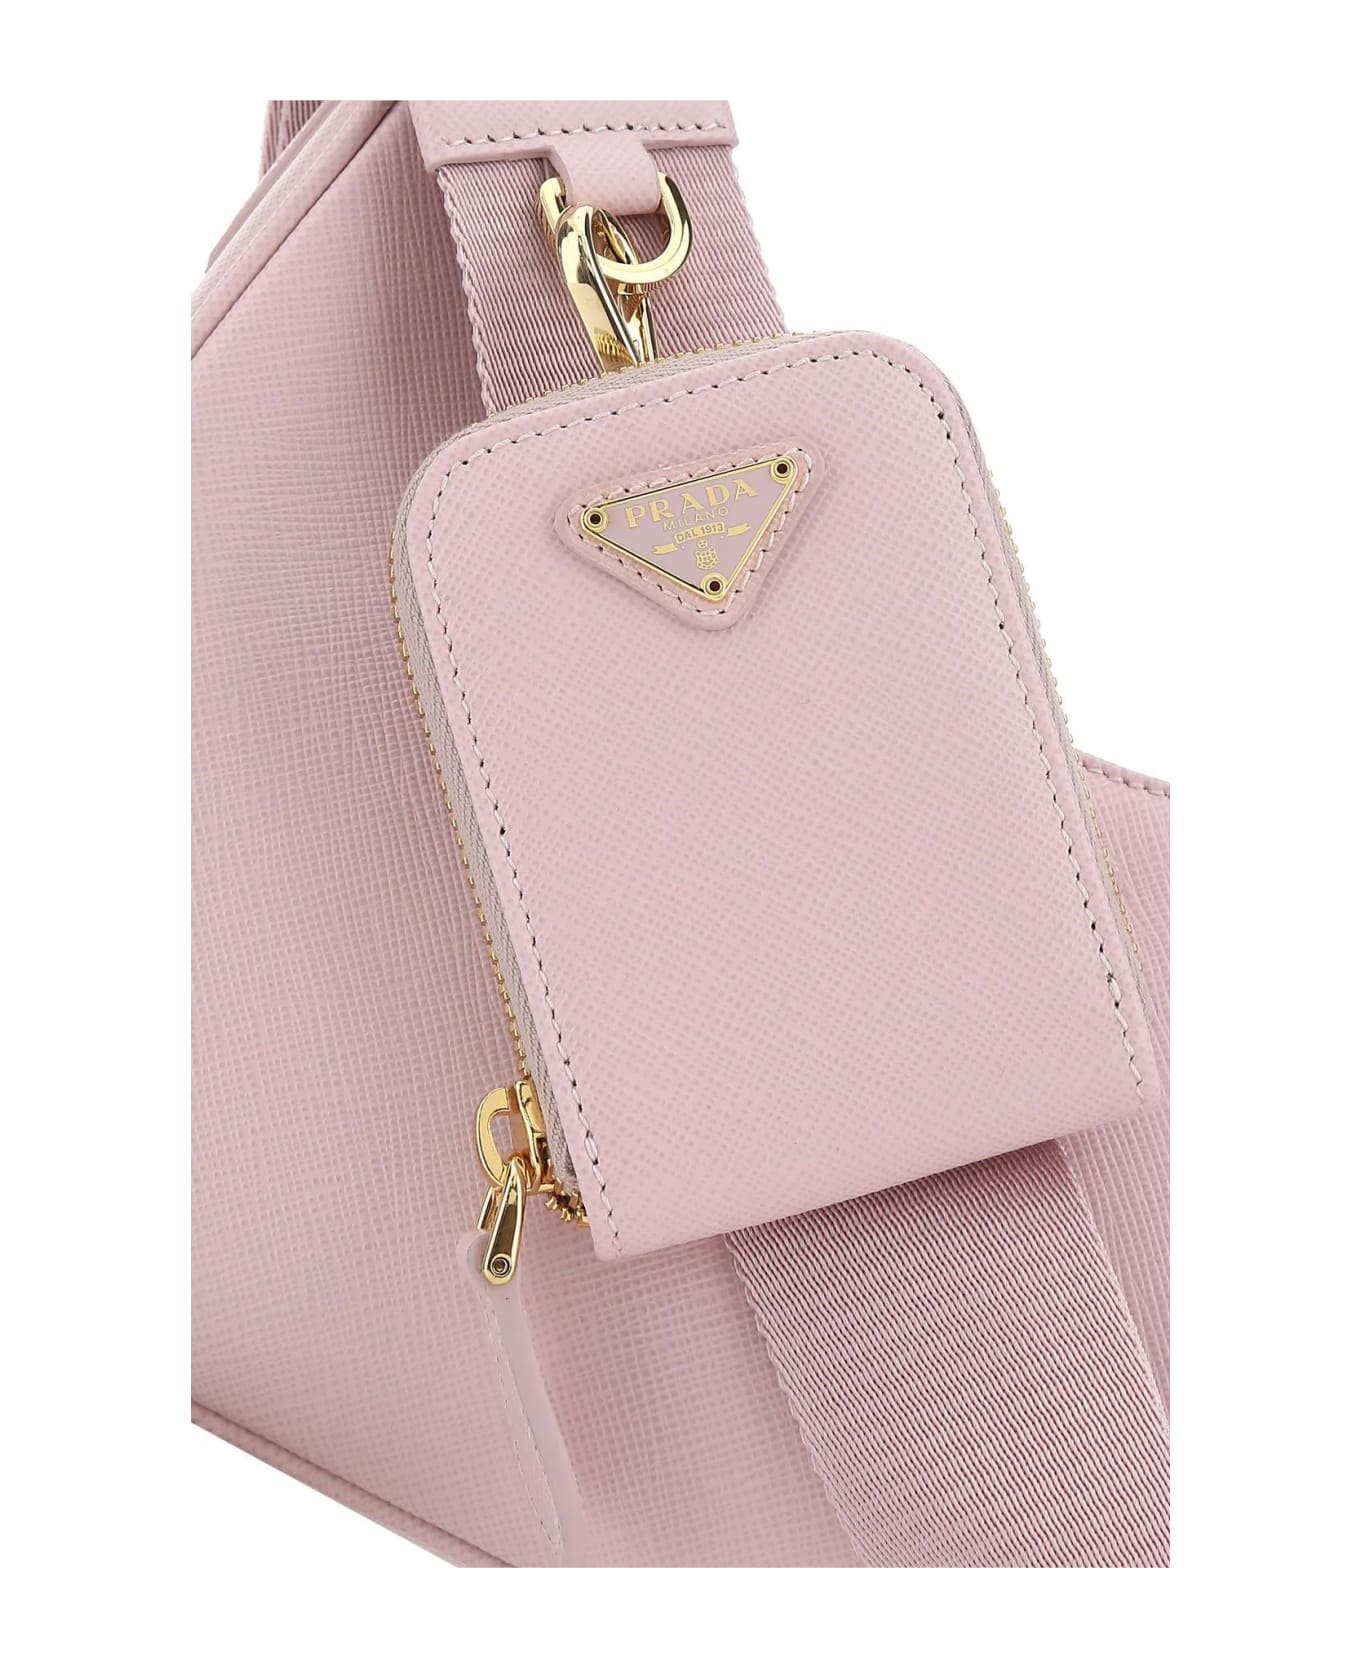 Prada Pastel Pink Leather Re-edition 2005 Handbag - Alabastro